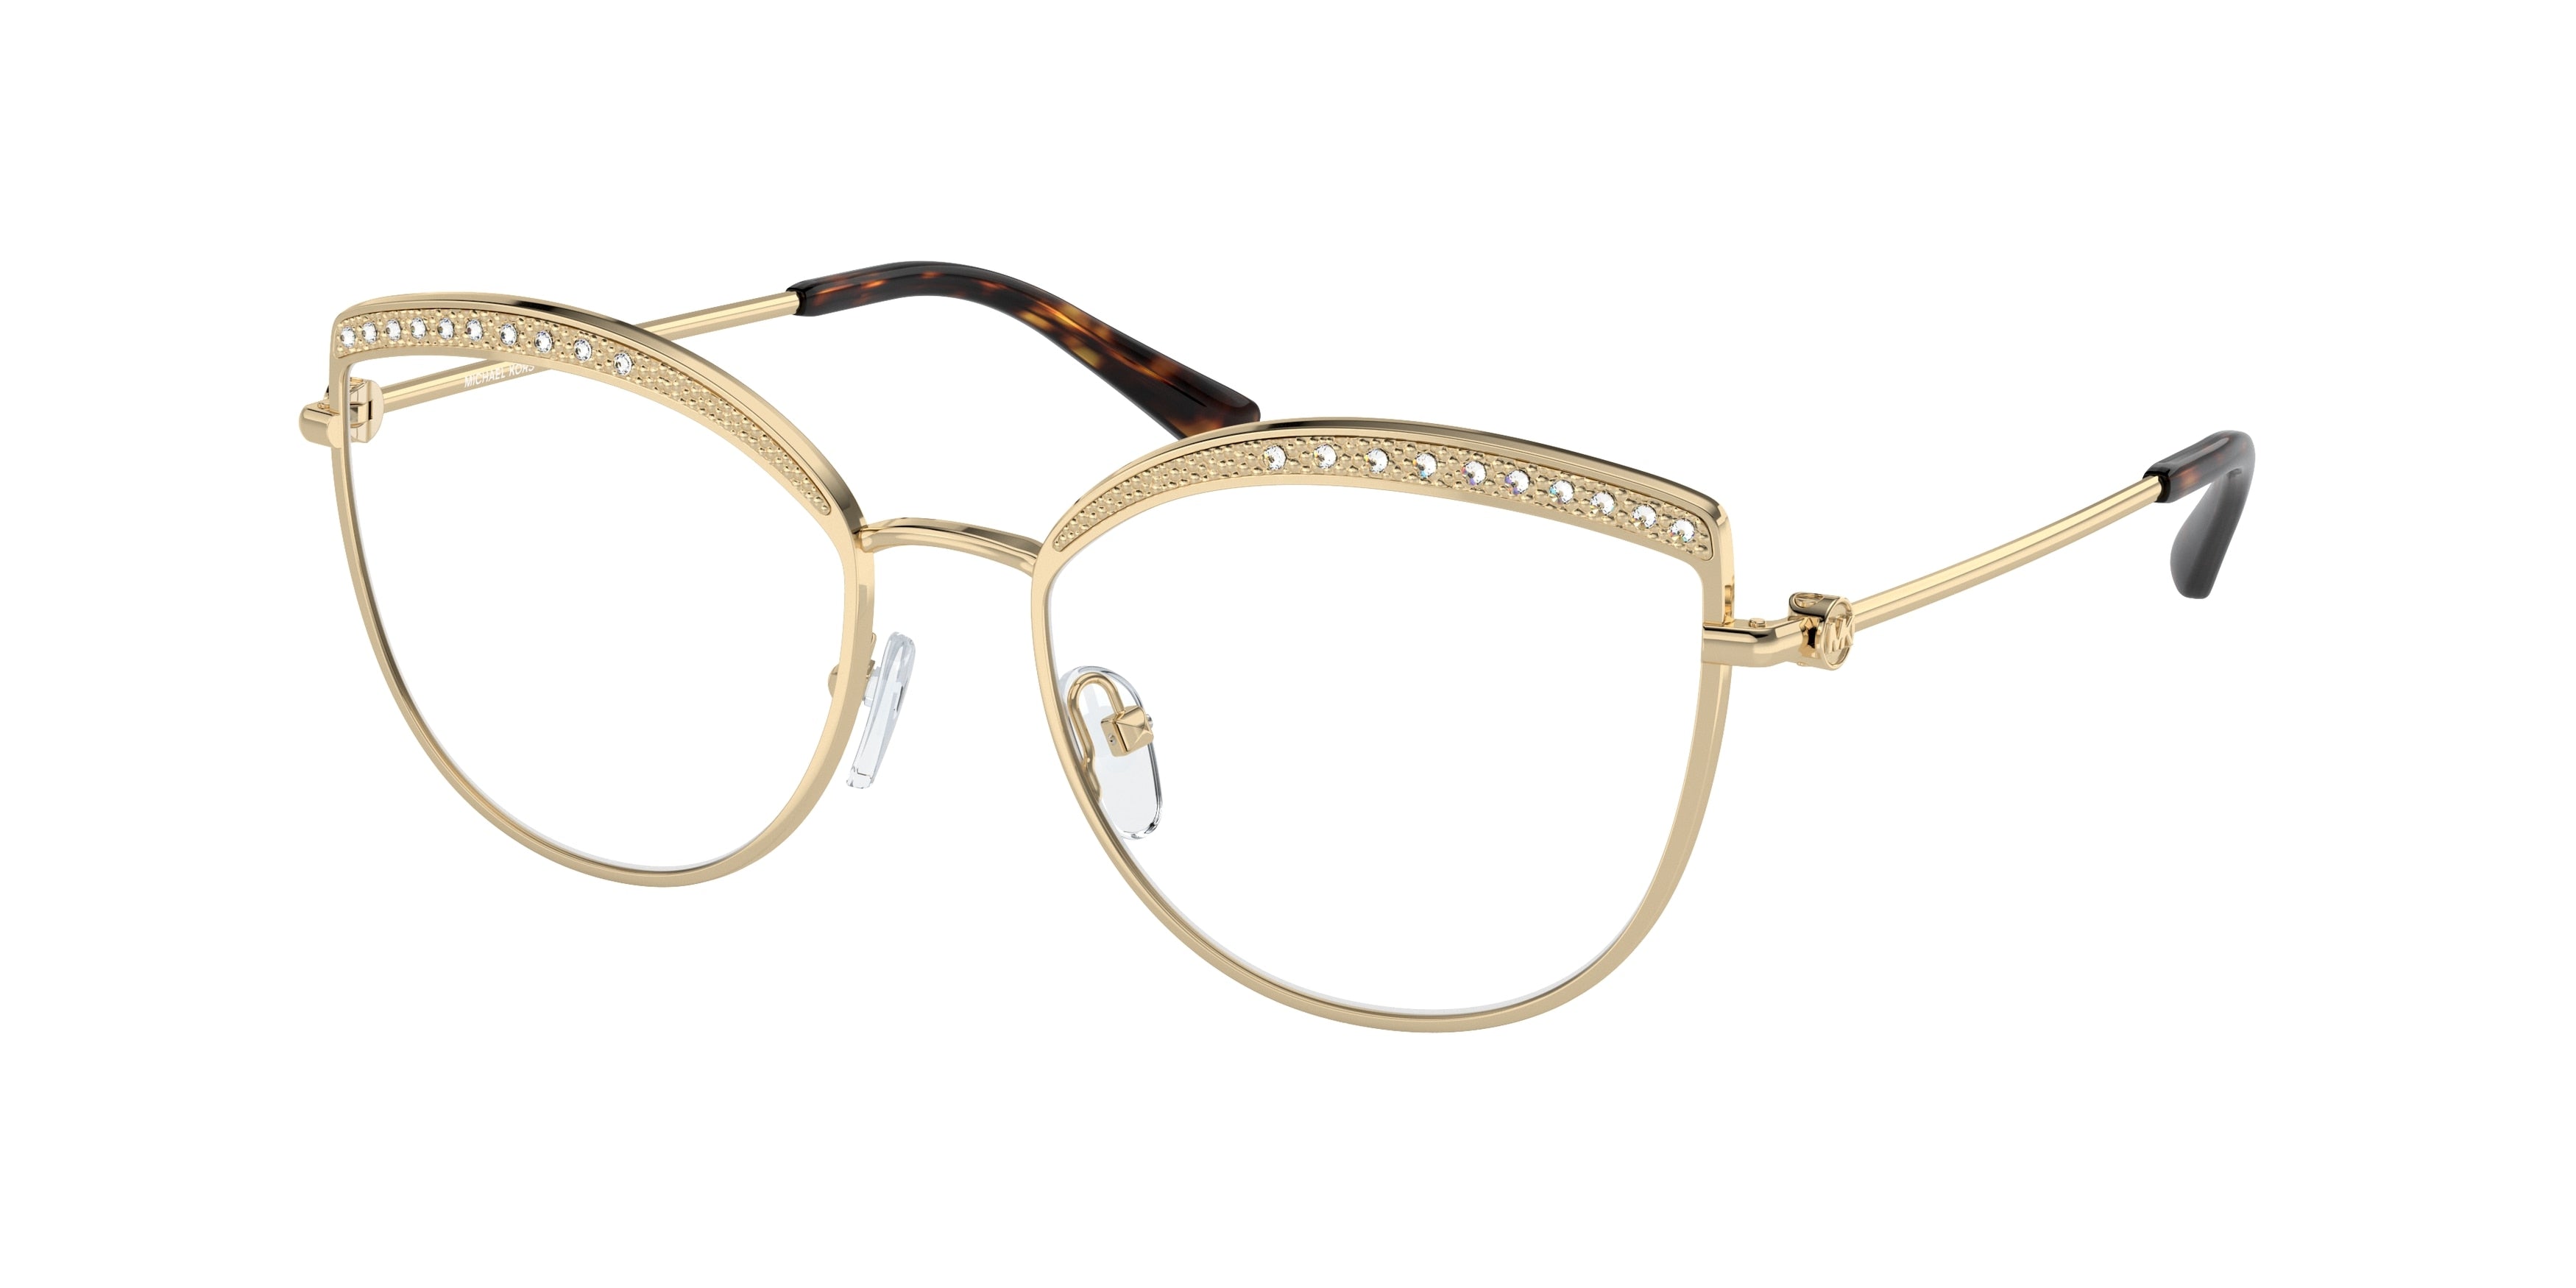 Michael Kors NAPIER MK3072 Cat Eye Eyeglasses  1018-Light Gold 54-140-17 - Color Map Gold